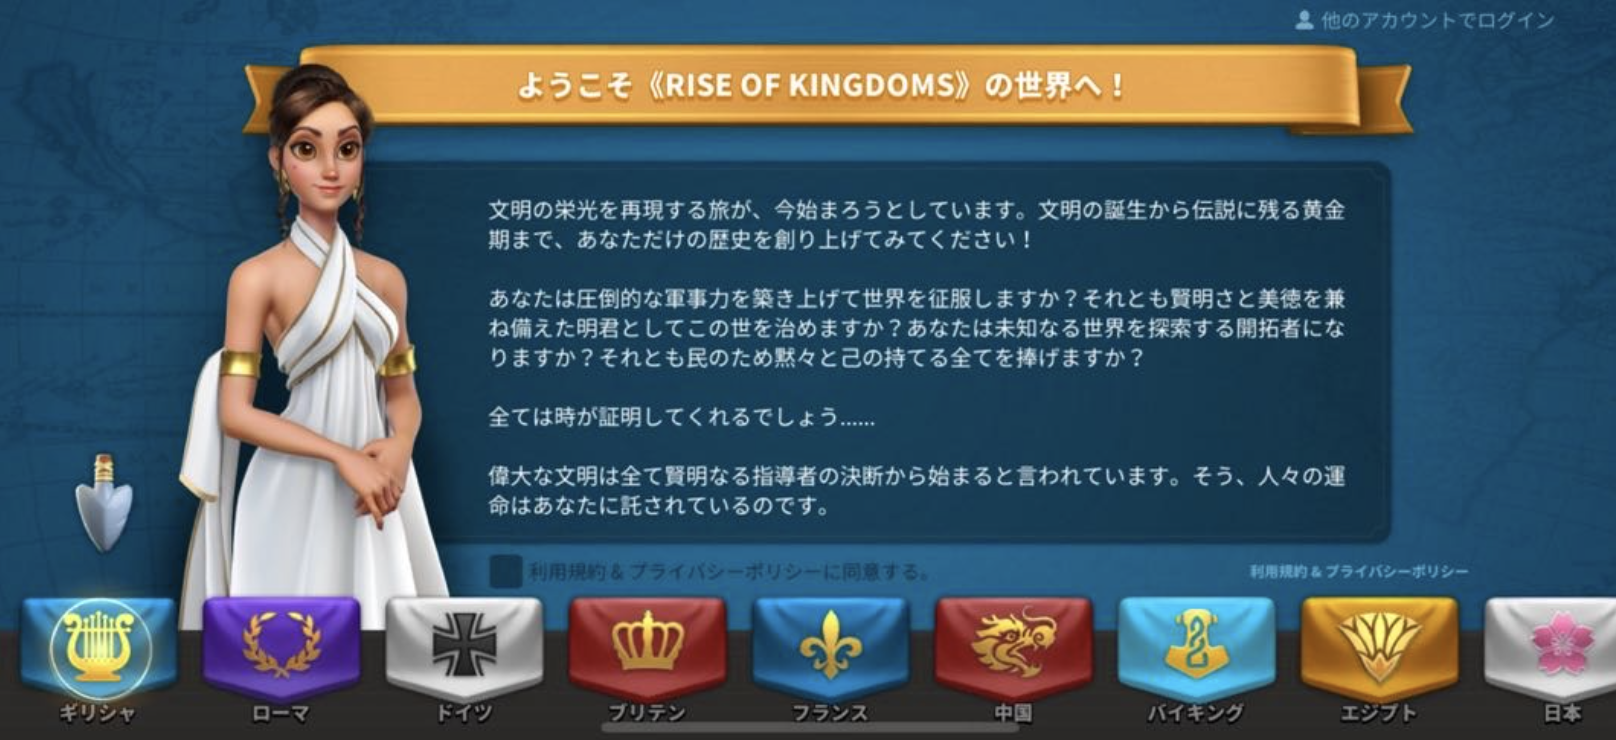 rise-of-kingdoms-awakening-of-nations　口コミ